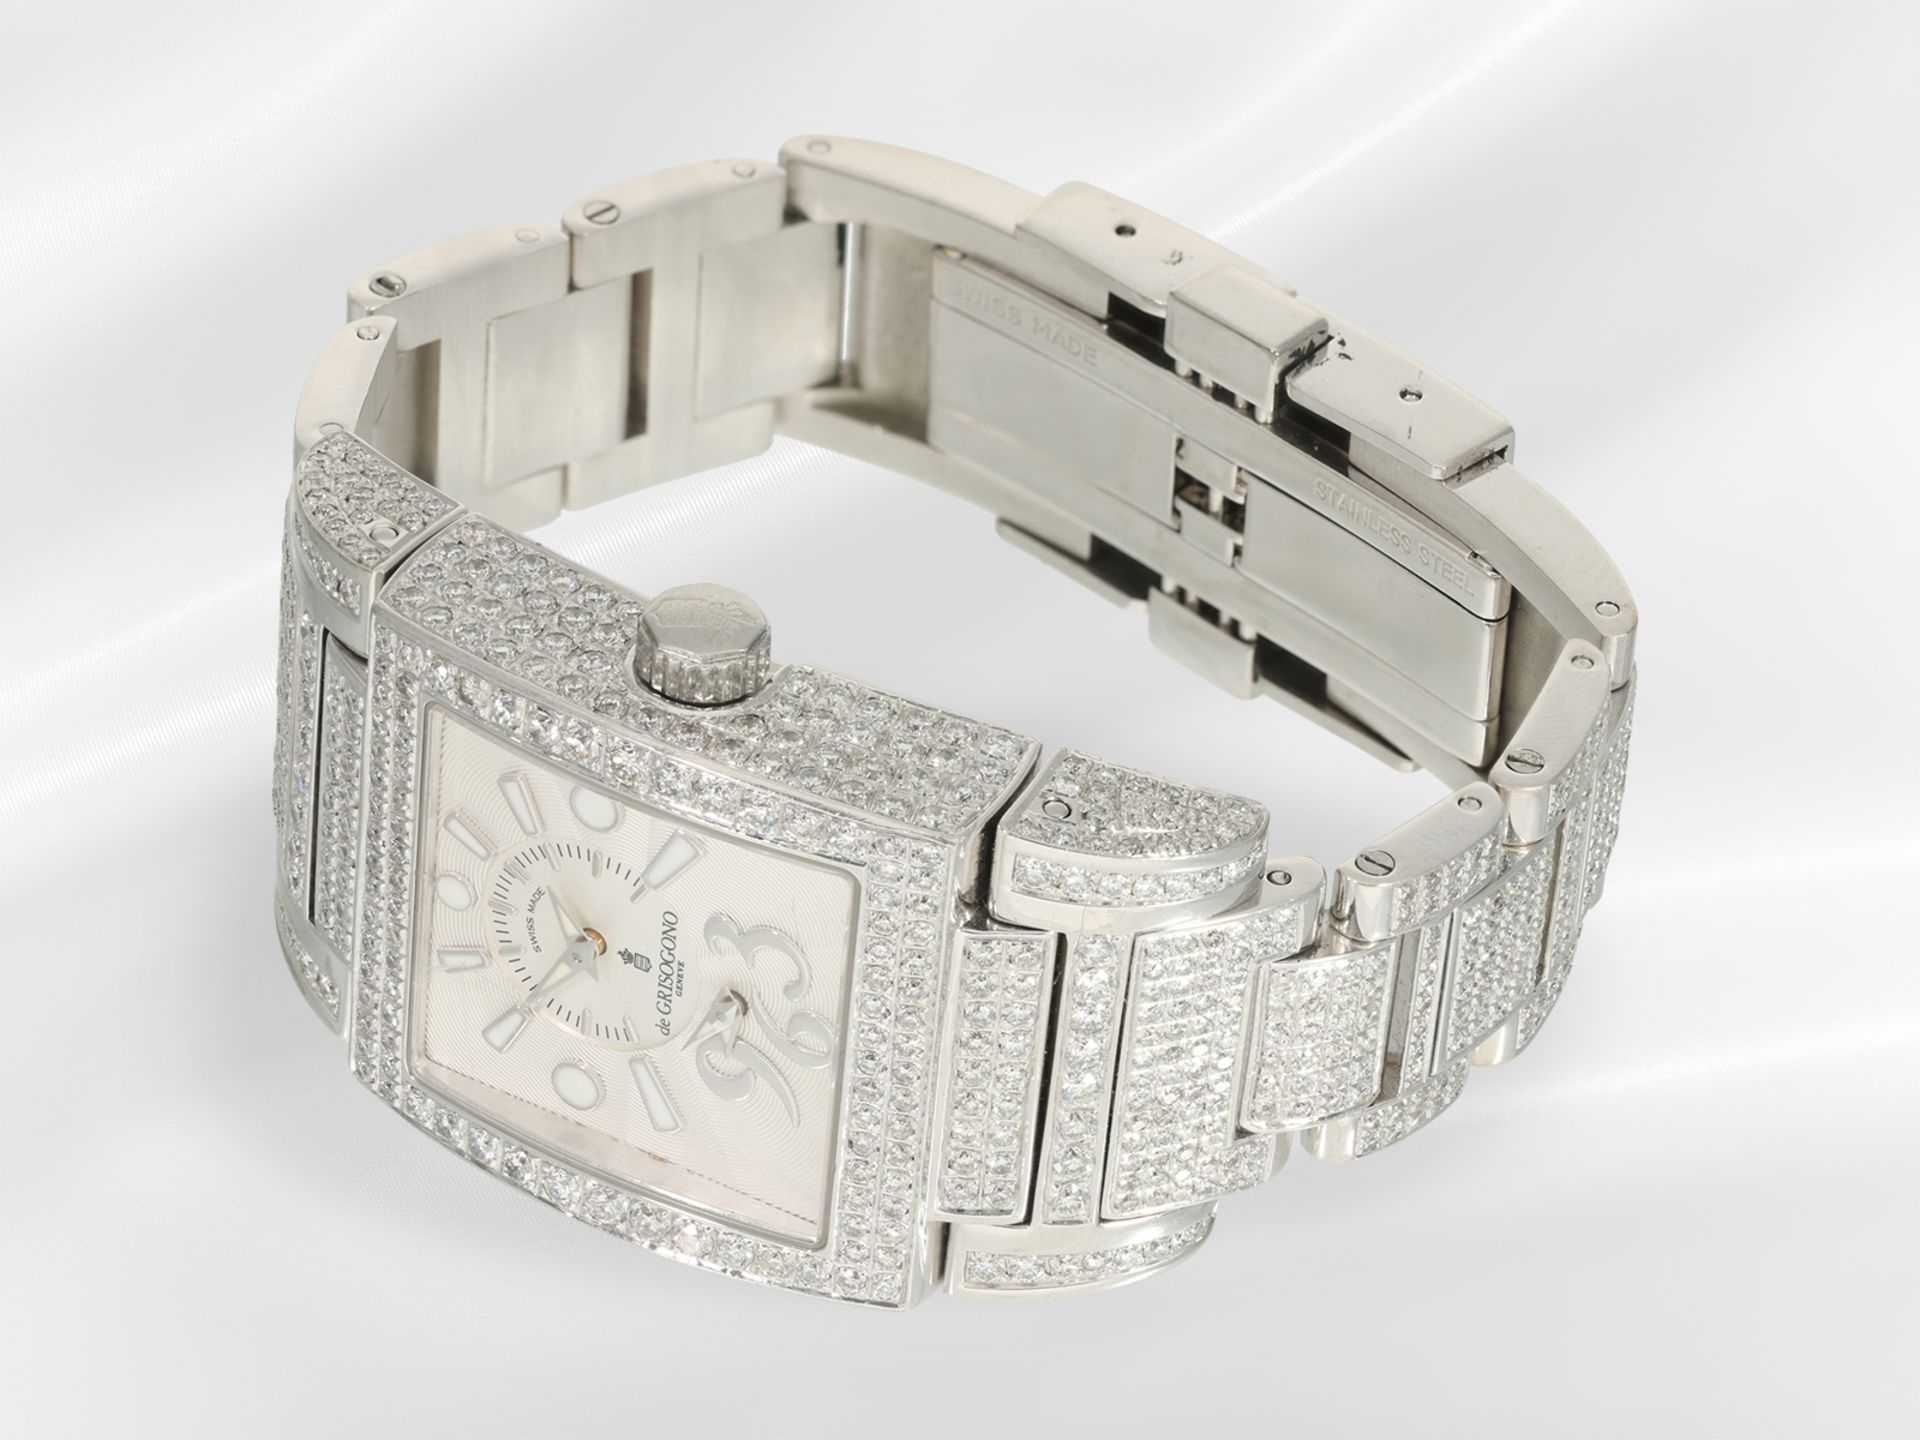 Armbanduhr: sehr hochwertige, luxuriöse Herrenuhr/Damenuhr, "Instrumentino by Grisogno Geneve" - Bild 4 aus 8